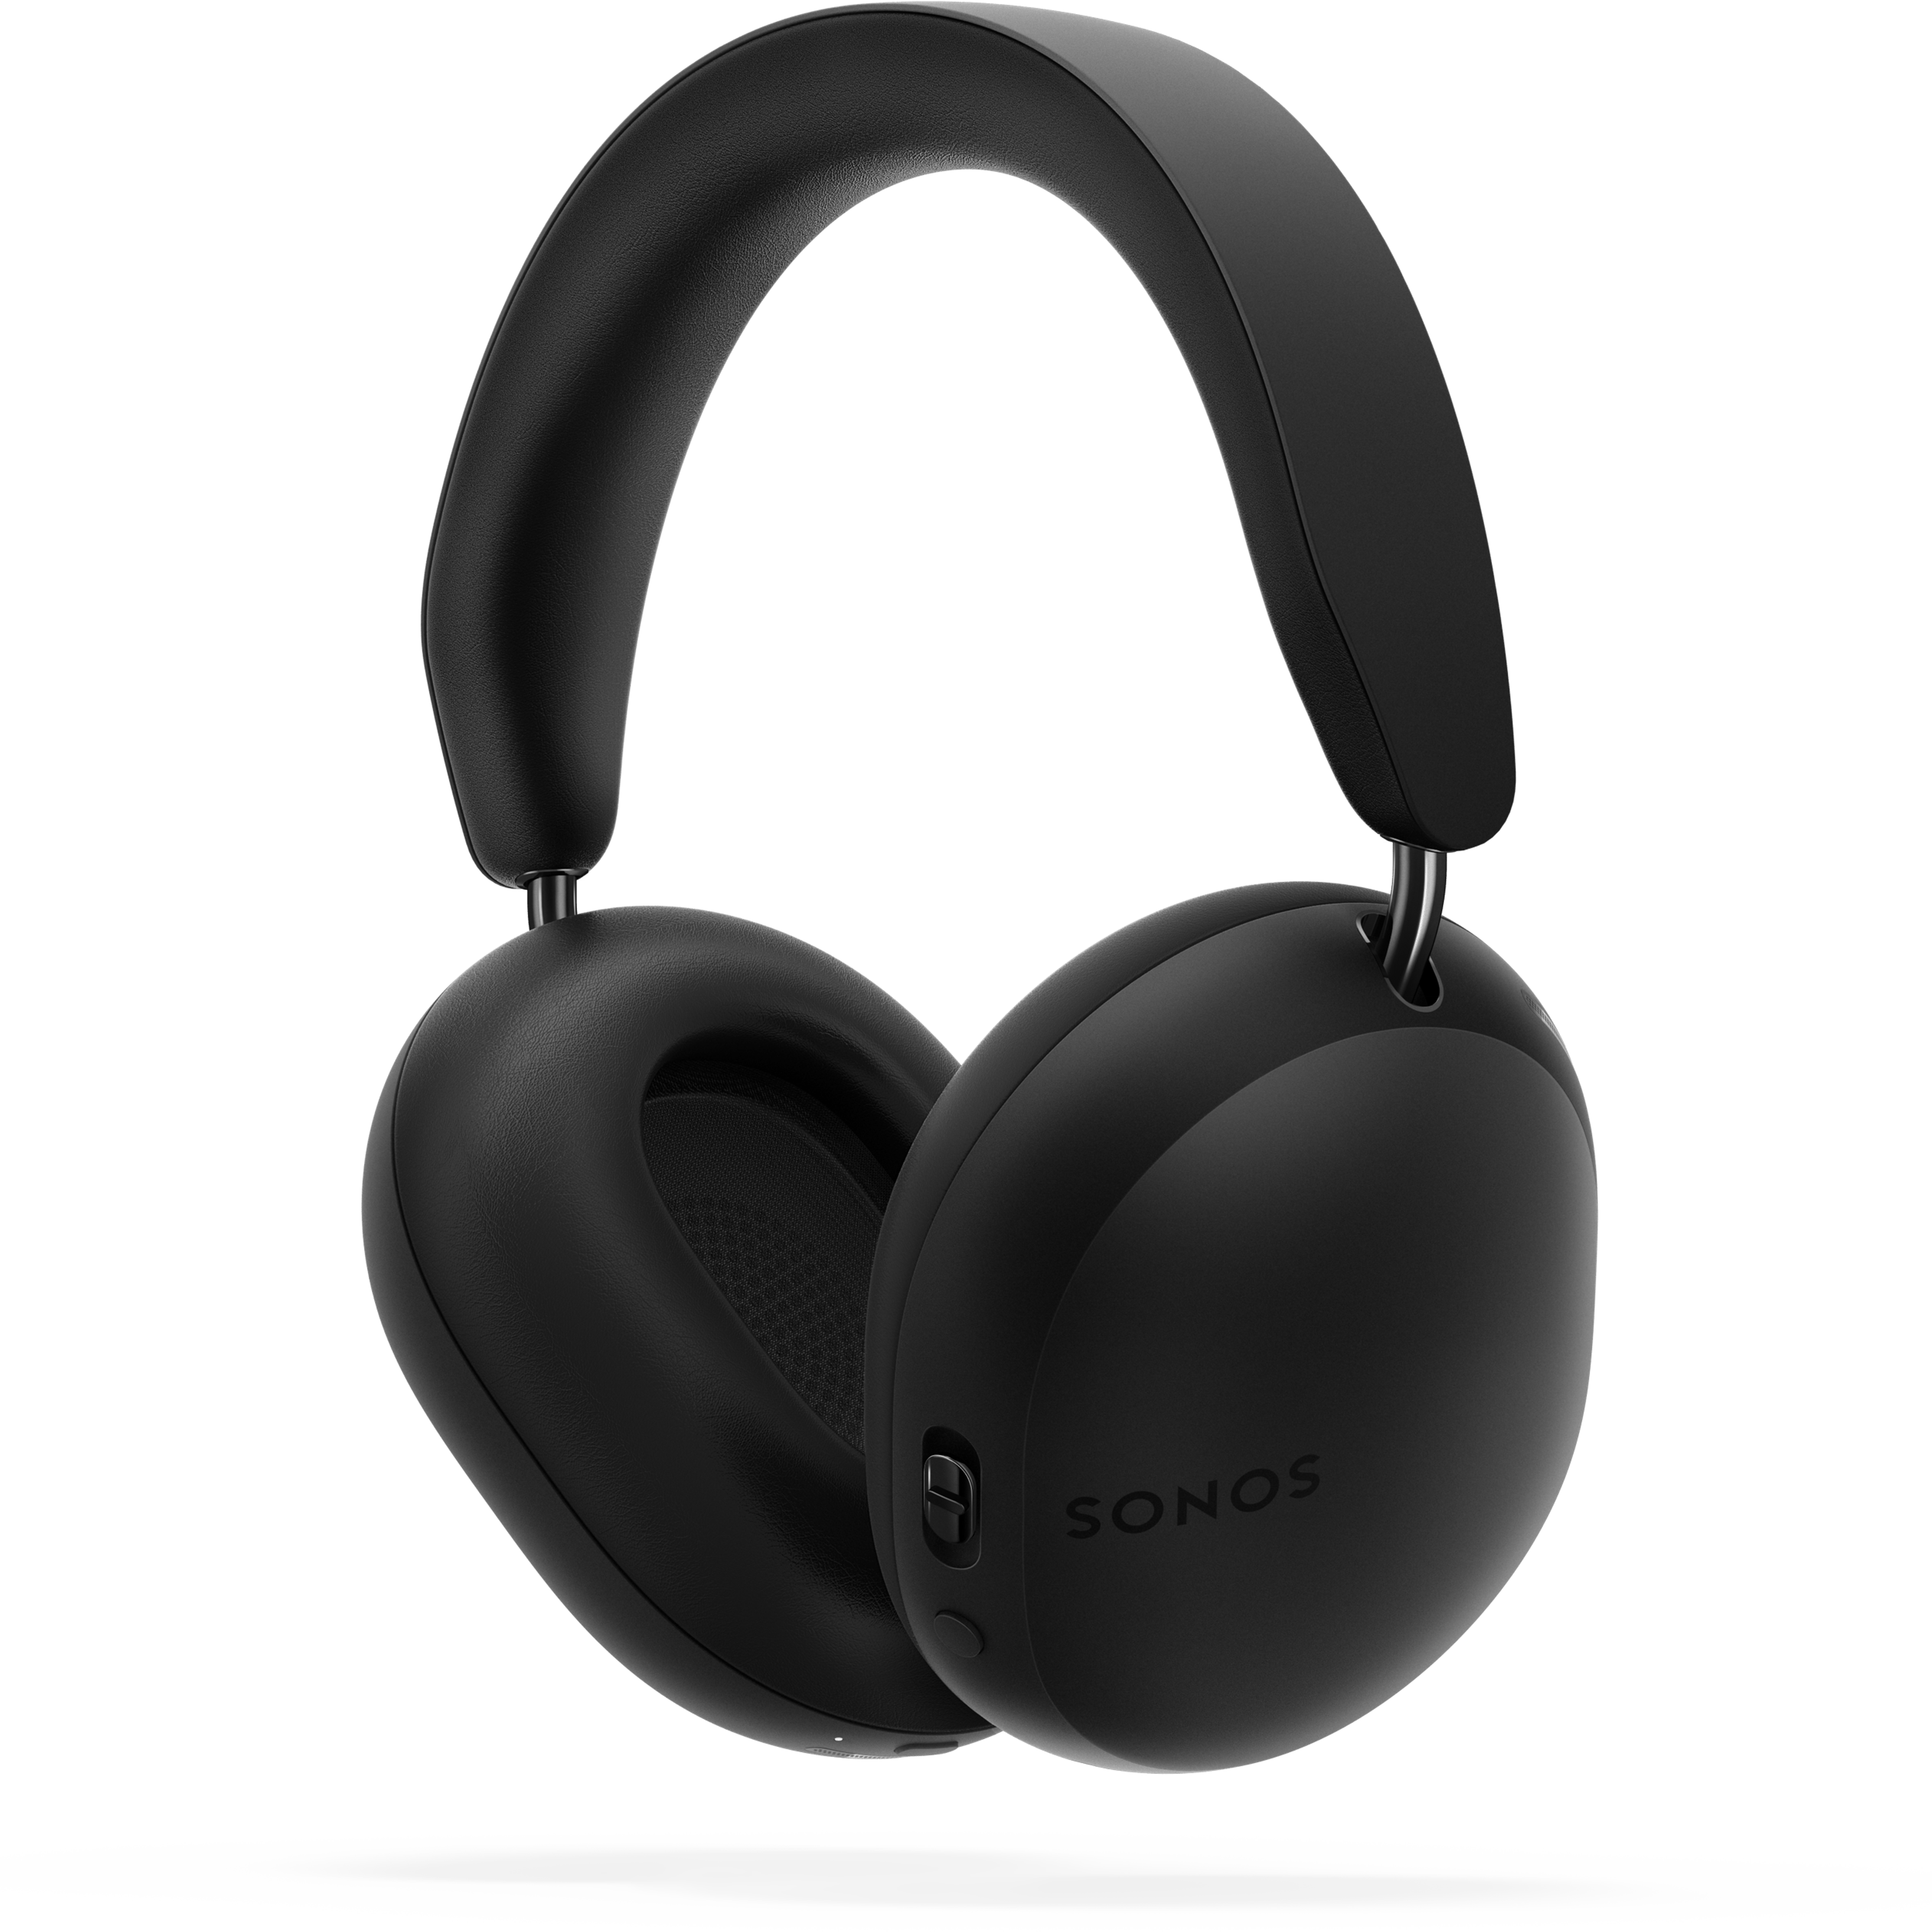 Słuchawki Sonos Ace w kolorze czarnym, pod kątem 45 stopni z tyłu, nad cieniem